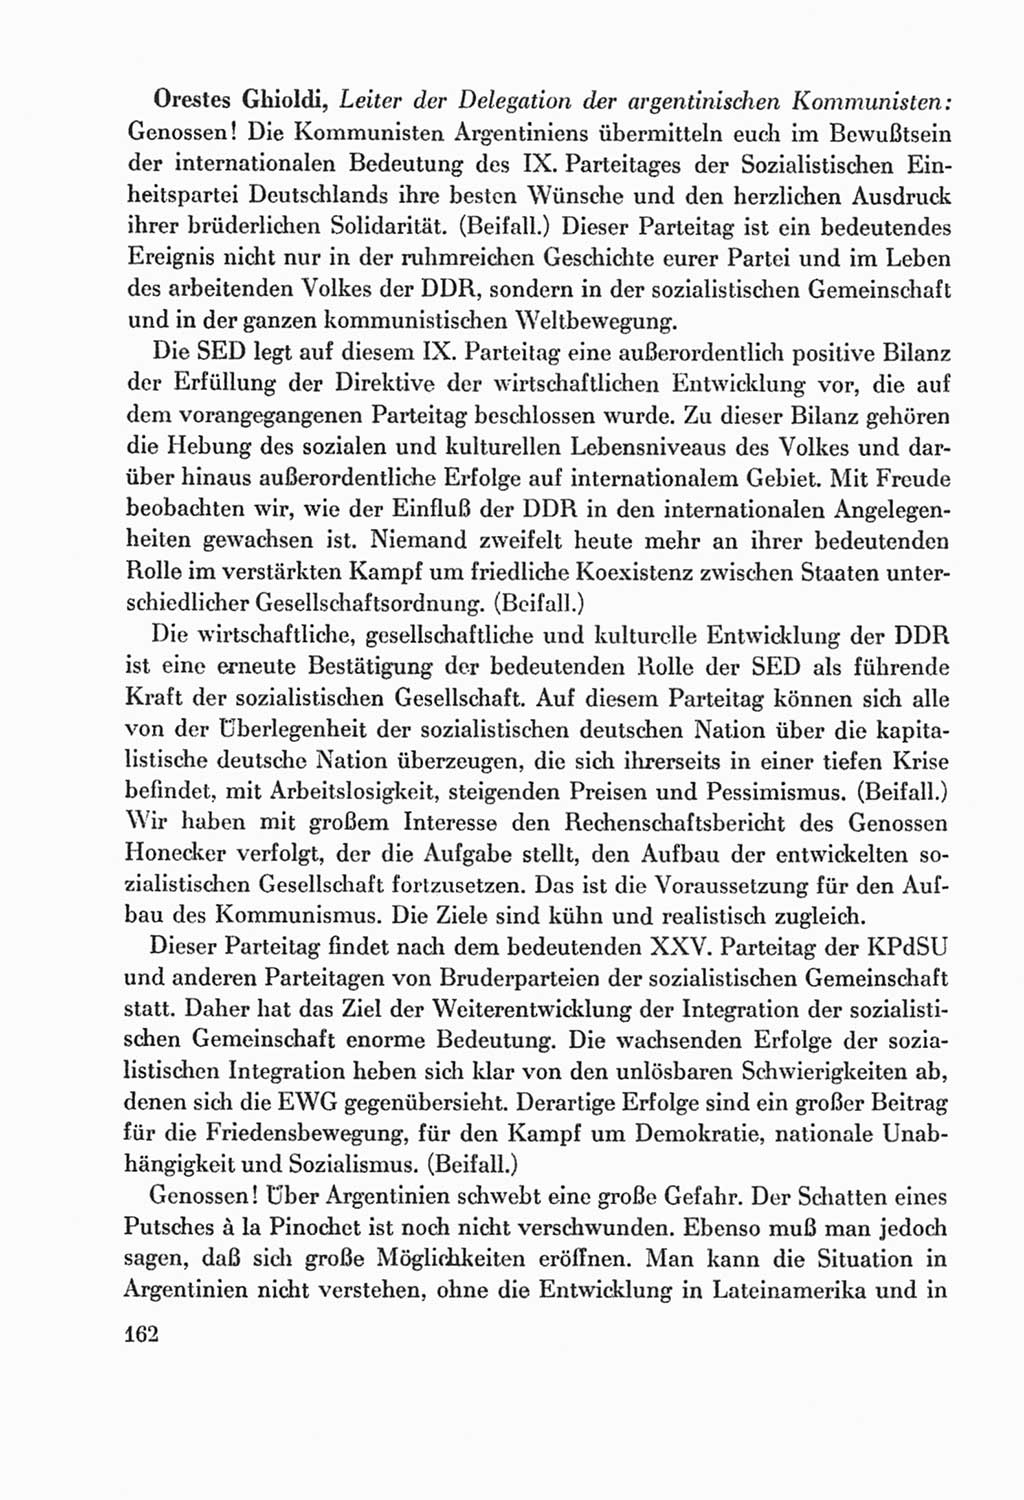 Protokoll der Verhandlungen des Ⅸ. Parteitages der Sozialistischen Einheitspartei Deutschlands (SED) [Deutsche Demokratische Republik (DDR)] 1976, Band 2, Seite 162 (Prot. Verh. Ⅸ. PT SED DDR 1976, Bd. 2, S. 162)